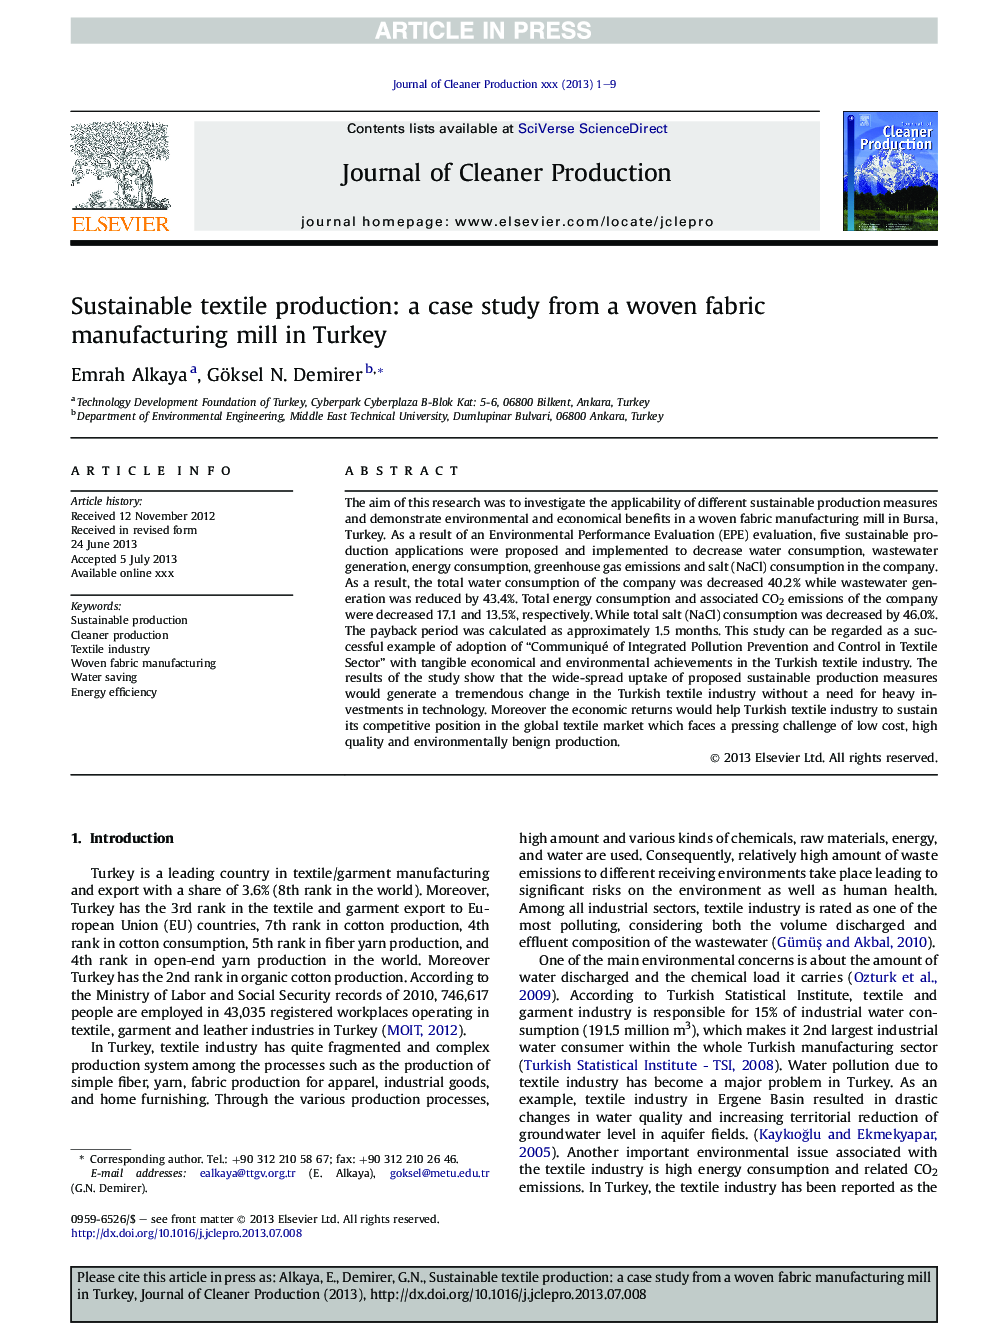 تولید نساجی پایدار: مطالعه موردی از یک کارخانه تولید پارچه بافته شده در ترکیه 